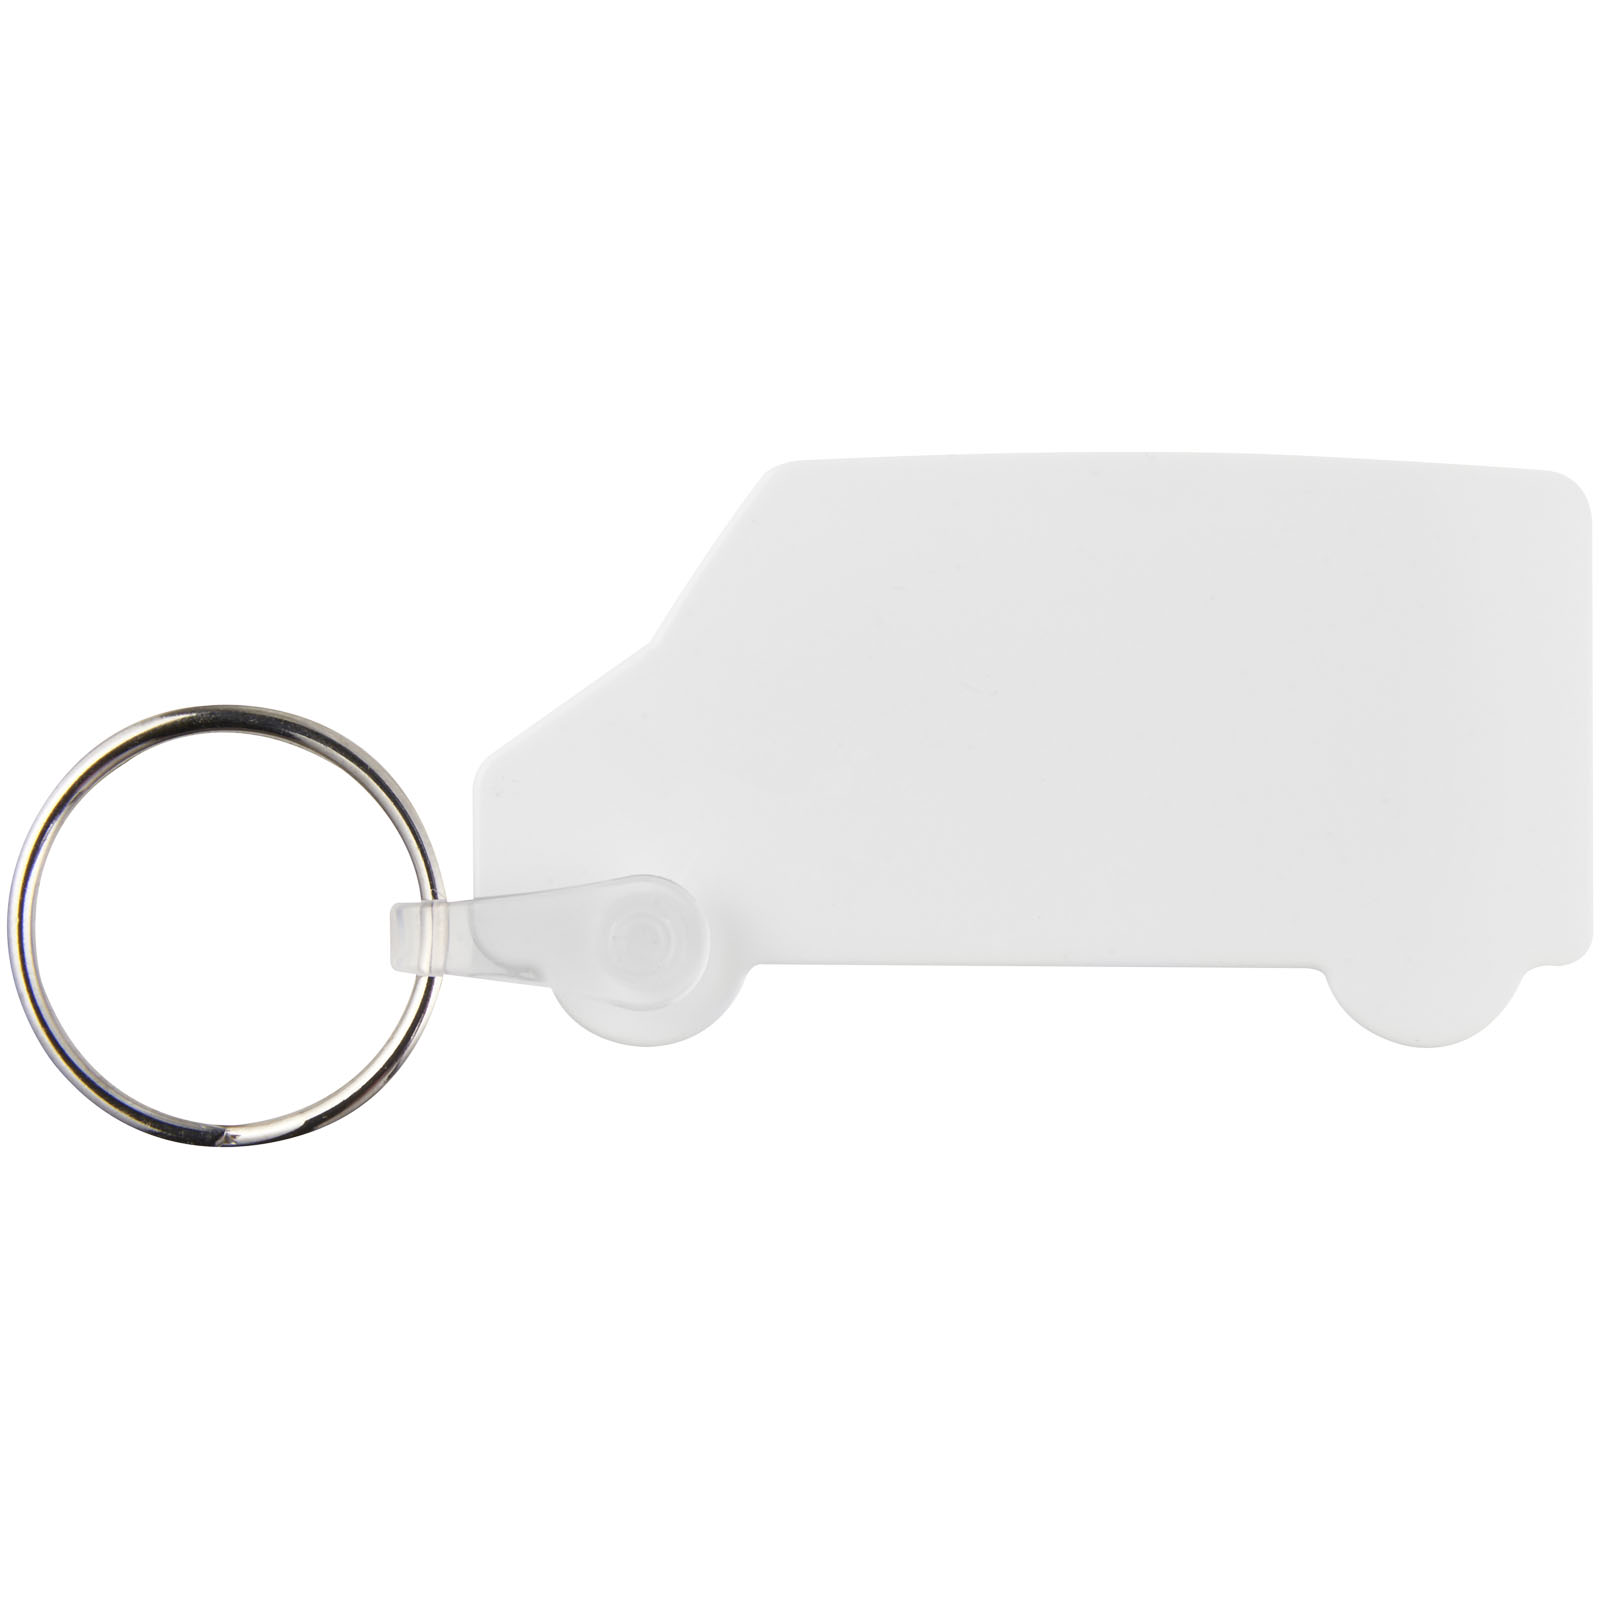 Porte-clés publicitaires - Porte-clés recyclé Tait en forme de minibus - 1